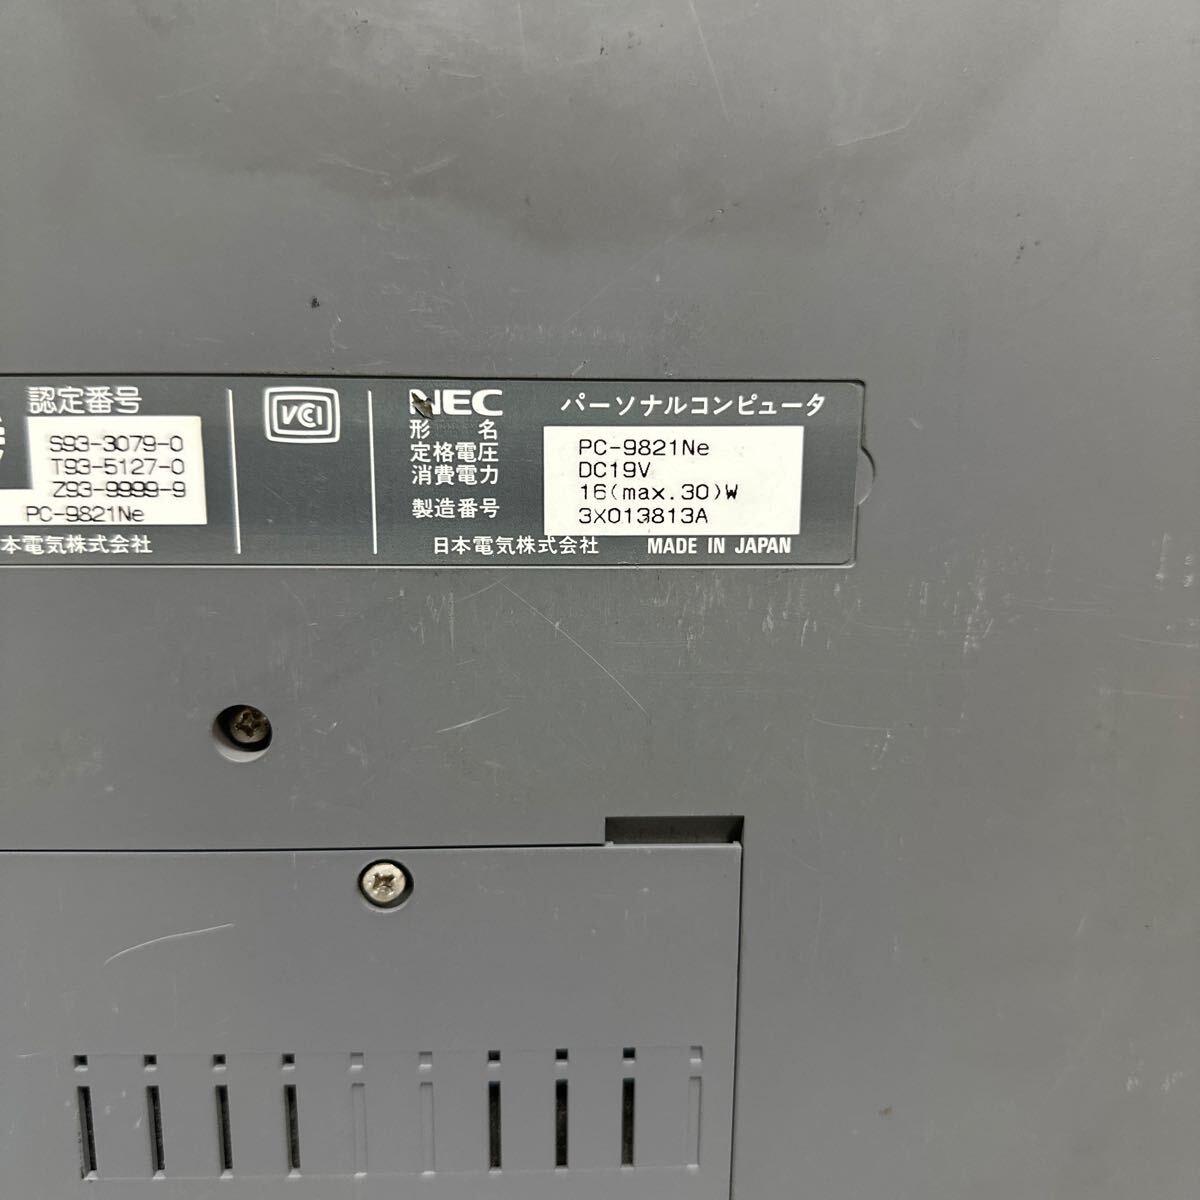 PCN98-1676 супер-скидка PC98 ноутбук NEC PC-9821Ne электризация не возможно Junk включение в покупку возможность 